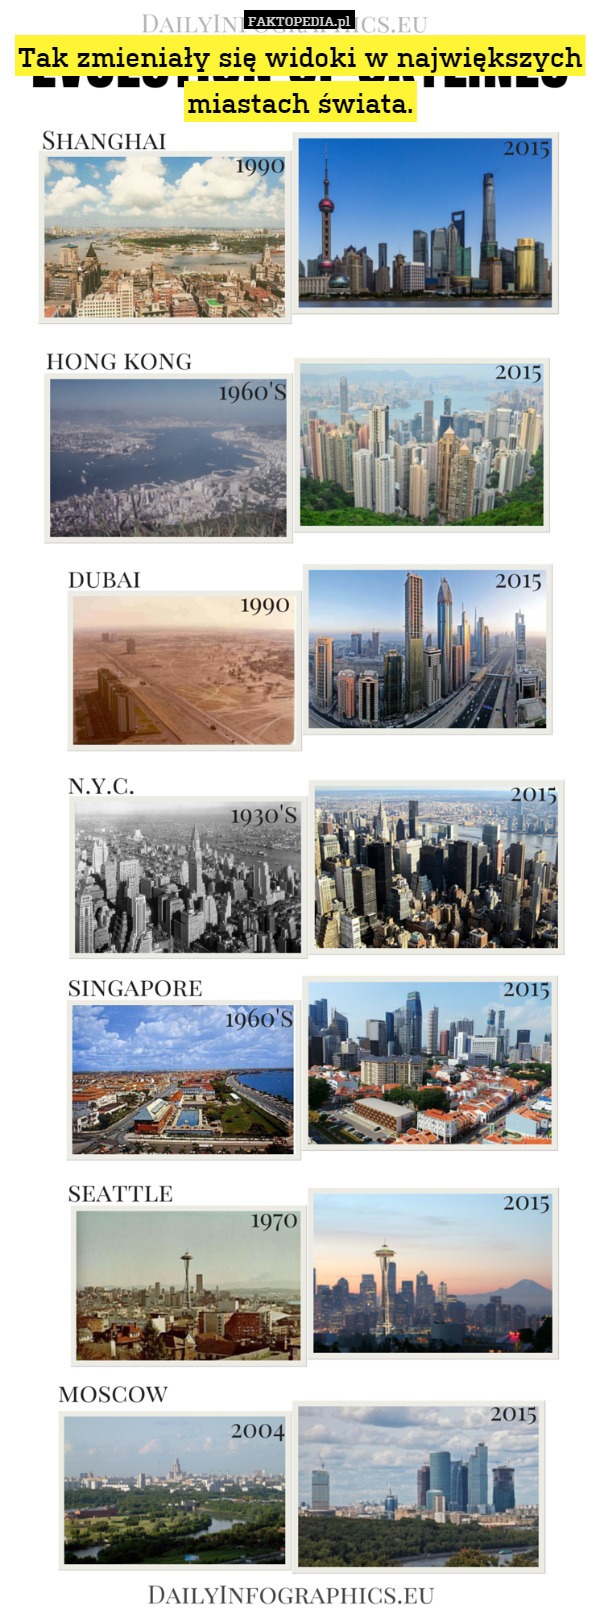 Tak zmieniały się widoki w największych miastach świata. 